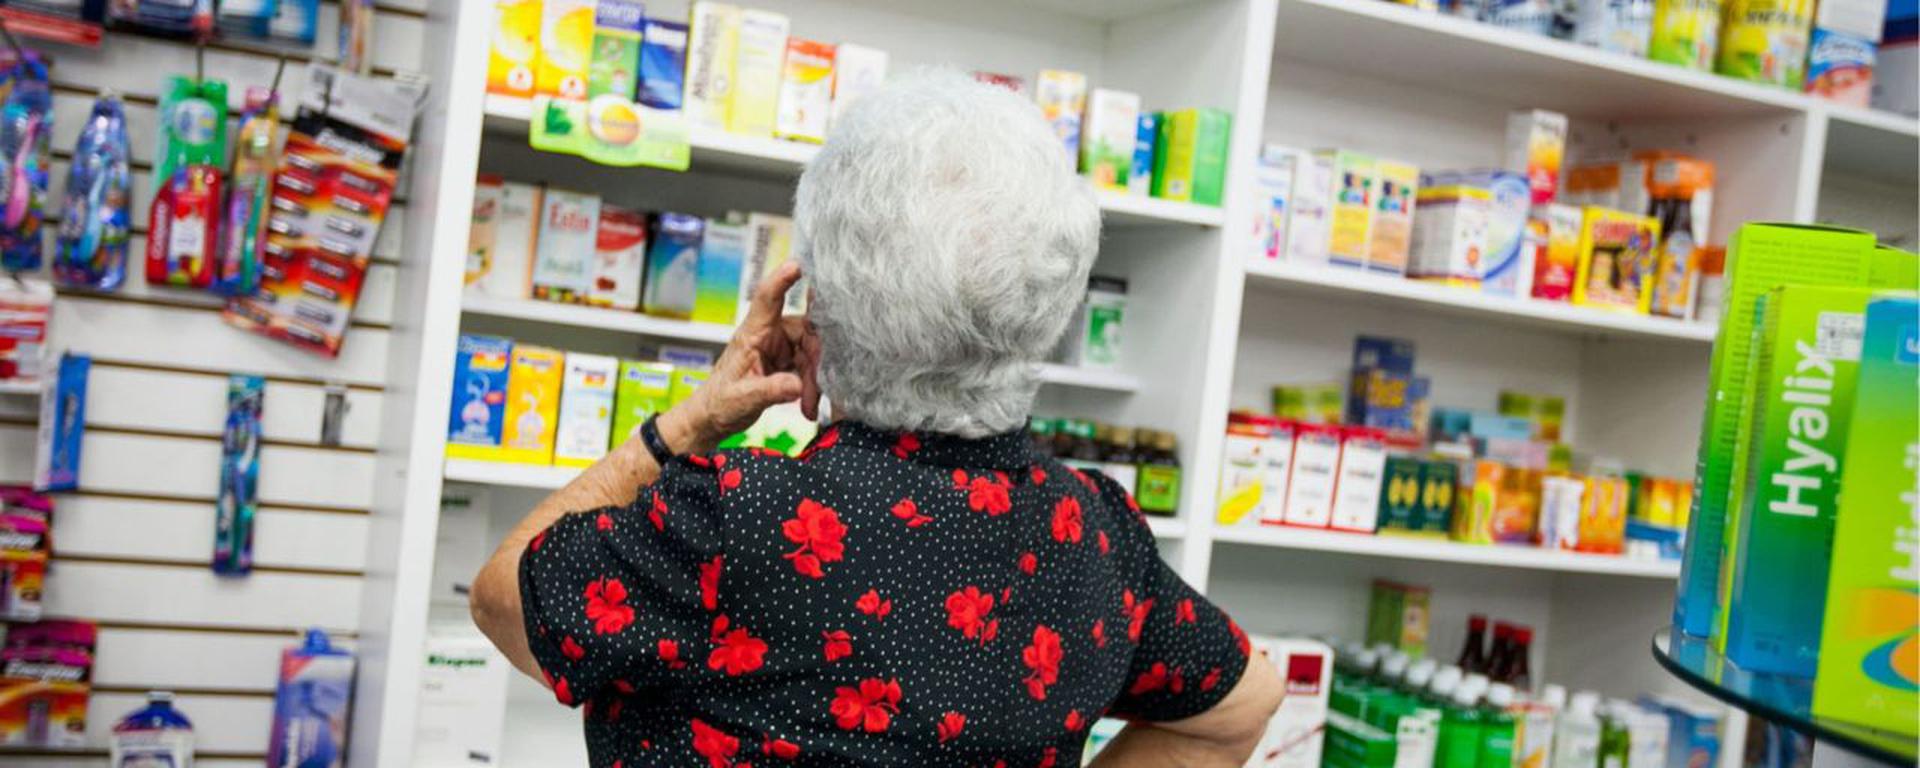 Medicamentos: Precios podrían subir ante el alza del dólar y costo de fletes